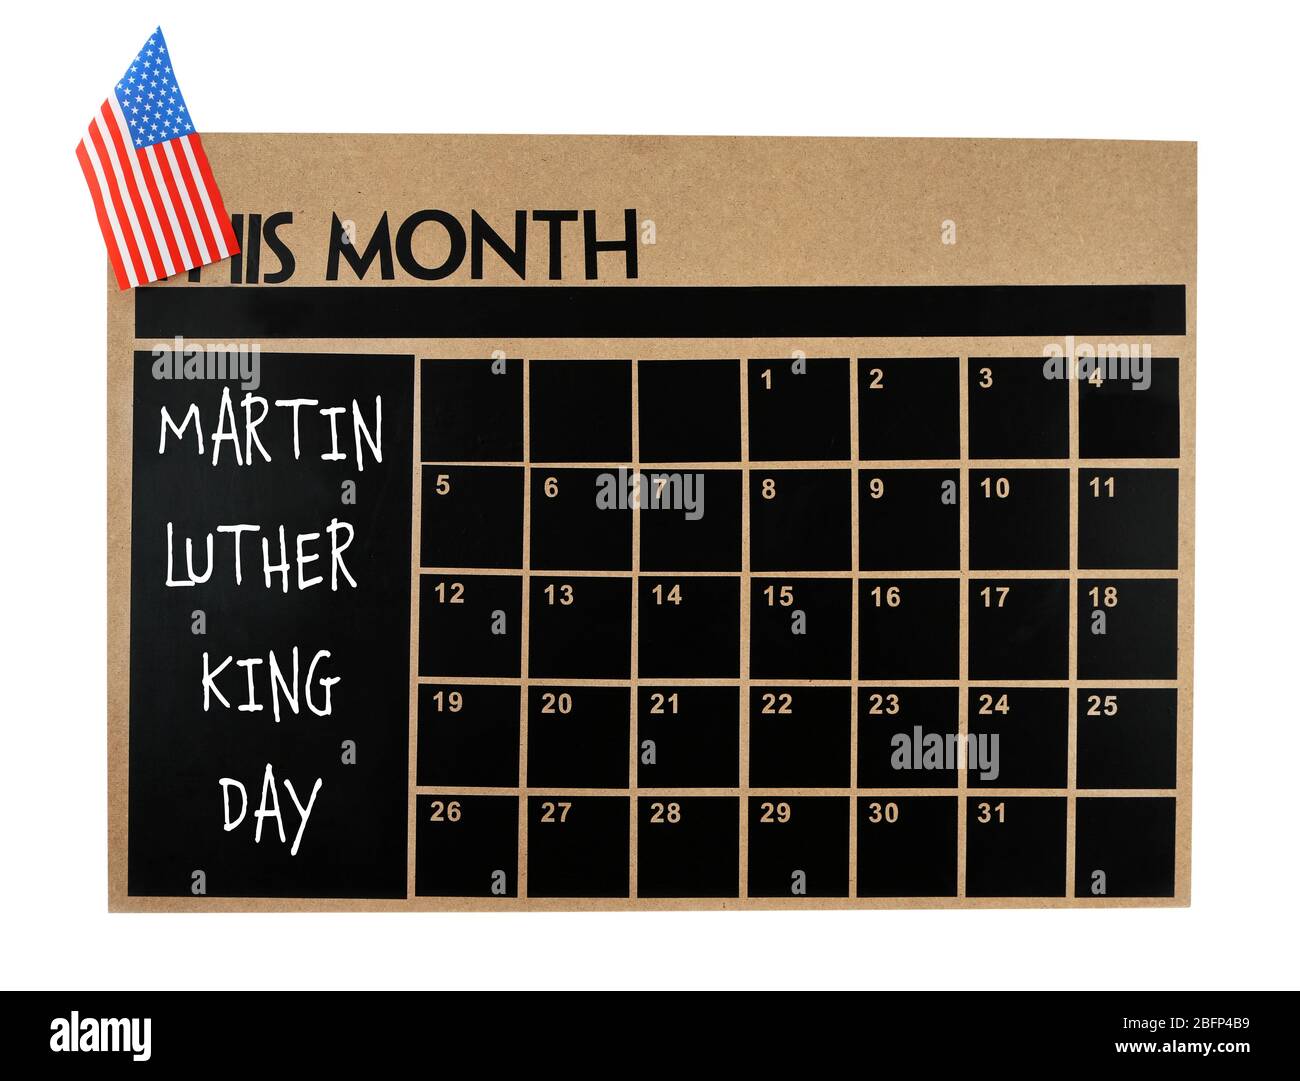 Journée Martin Luther King. Calendrier mural de tableau de surveillance isolé sur blanc Banque D'Images